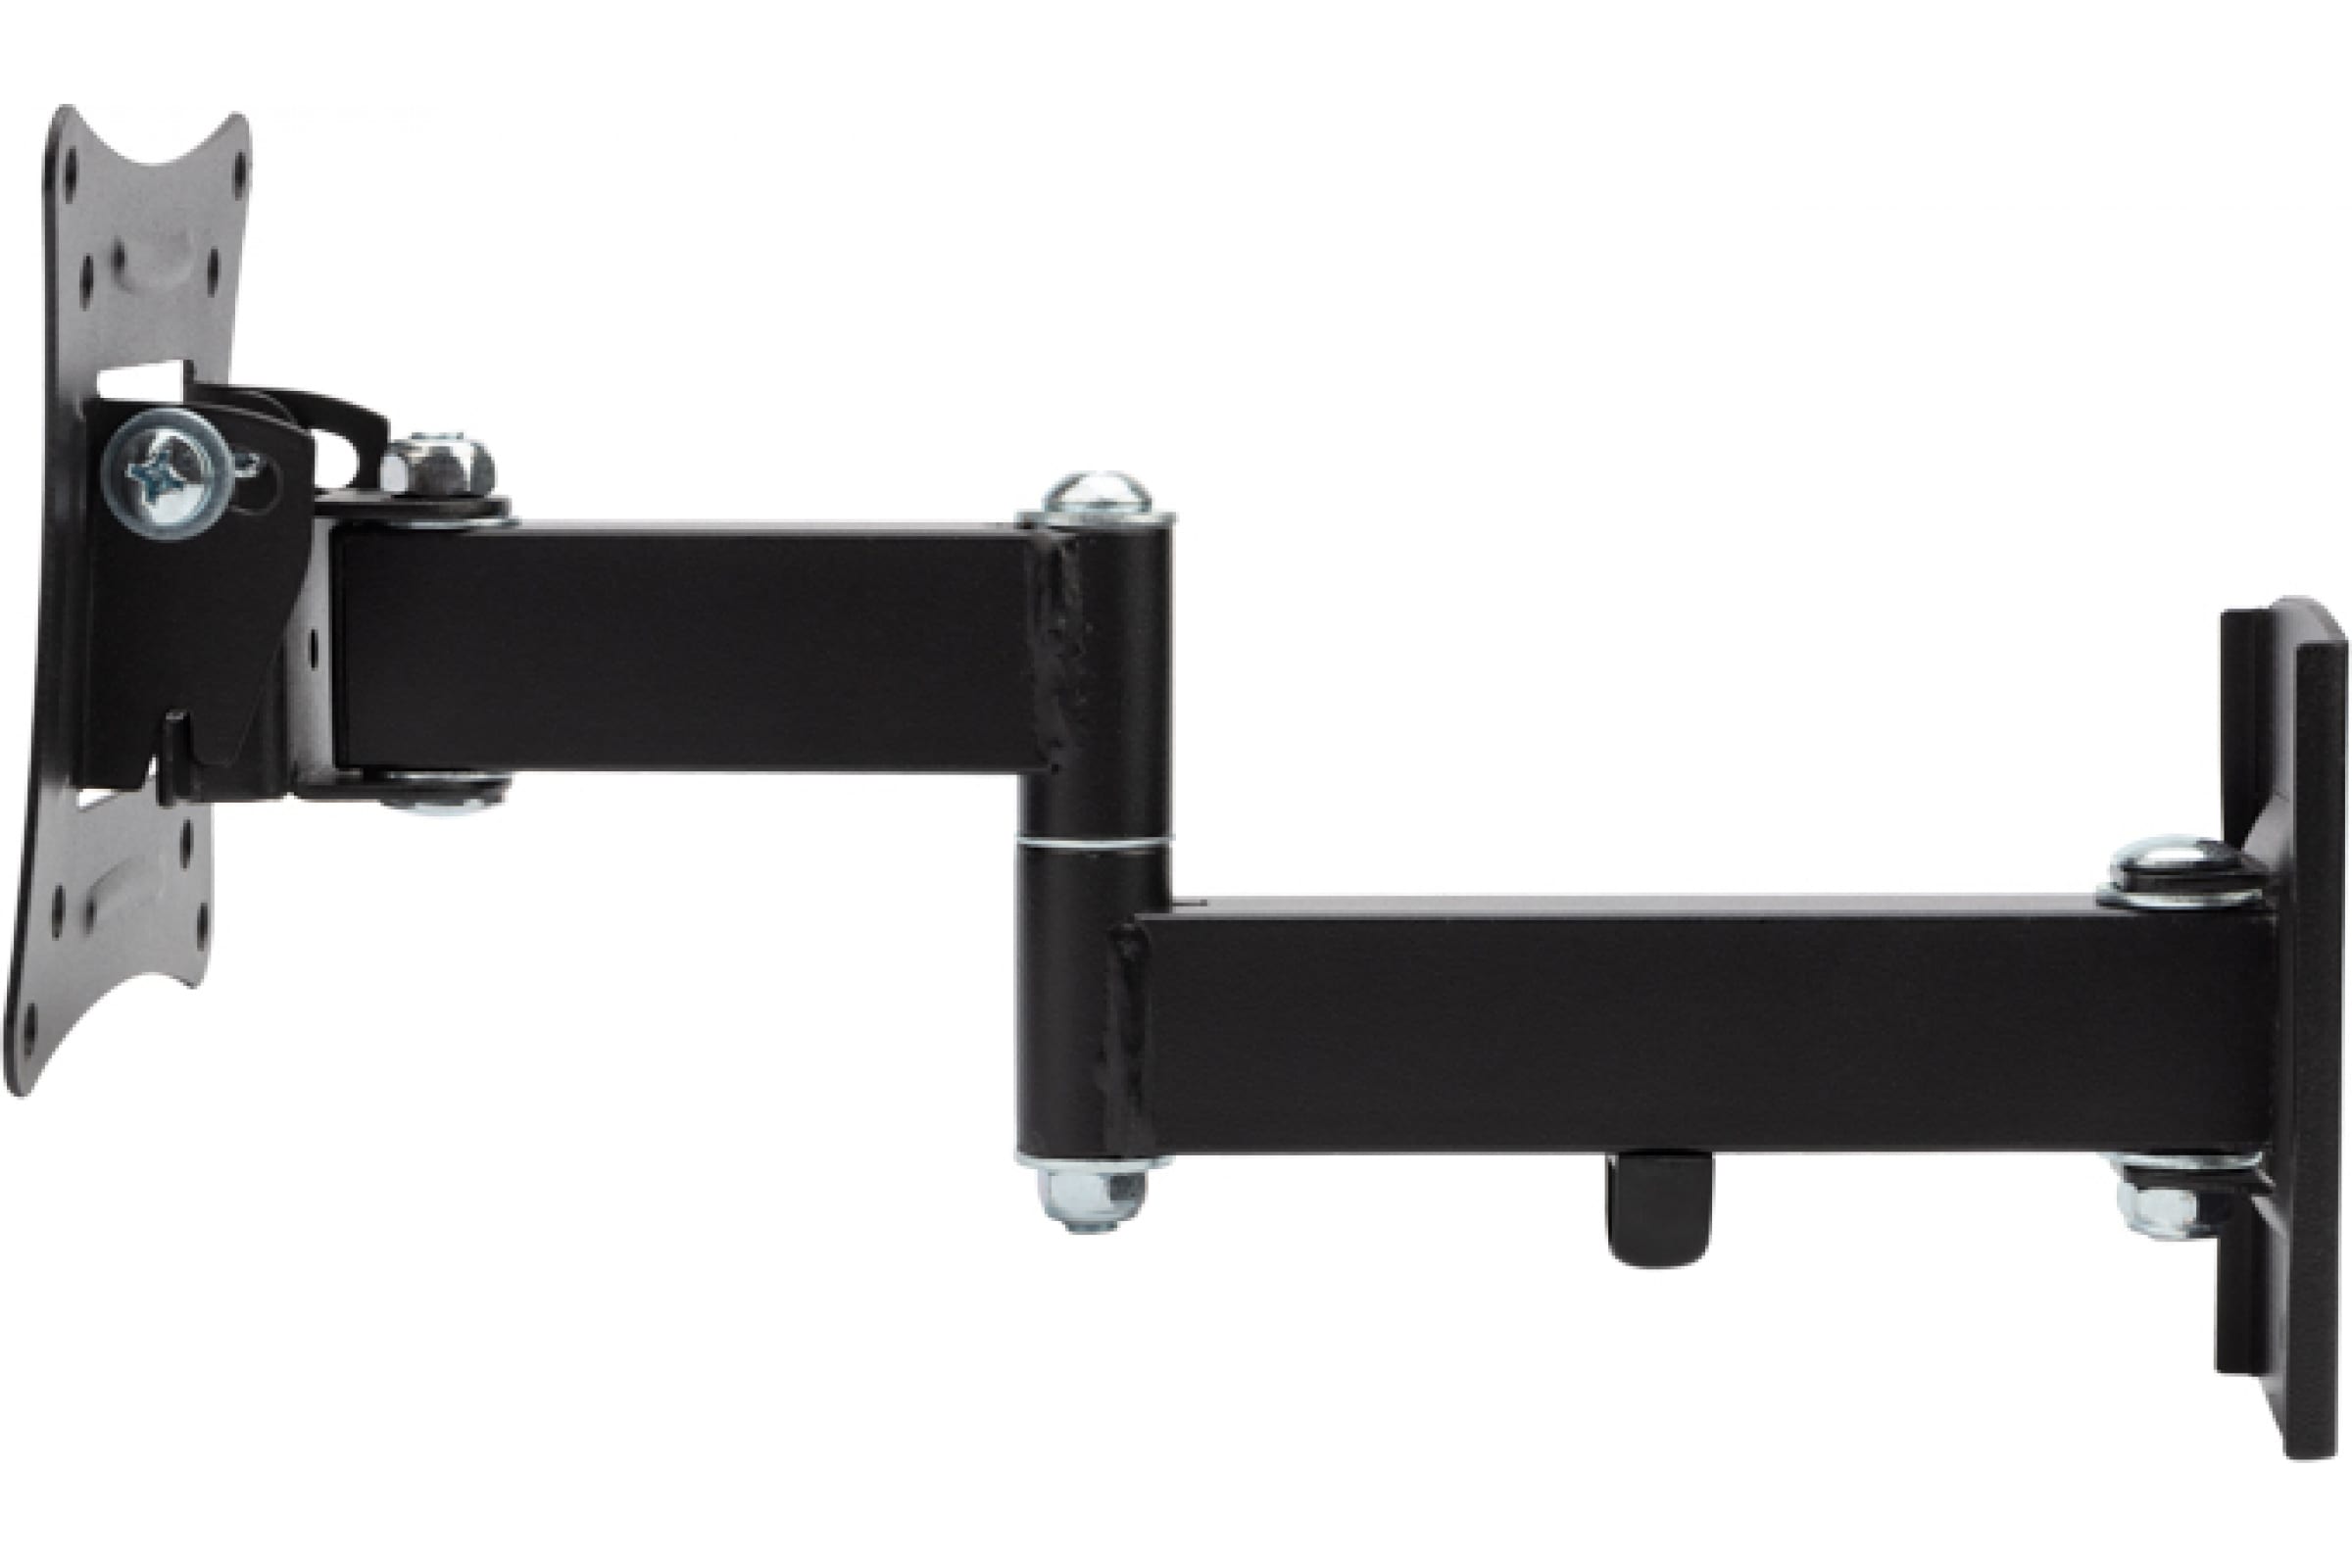 Кронштейн настенный для TV/монитора Rexant 38-0051, 10"-27", VESA 75x75мм-100x100мм, наклонный, поворотный, до 15 кг, черный (38-0051)